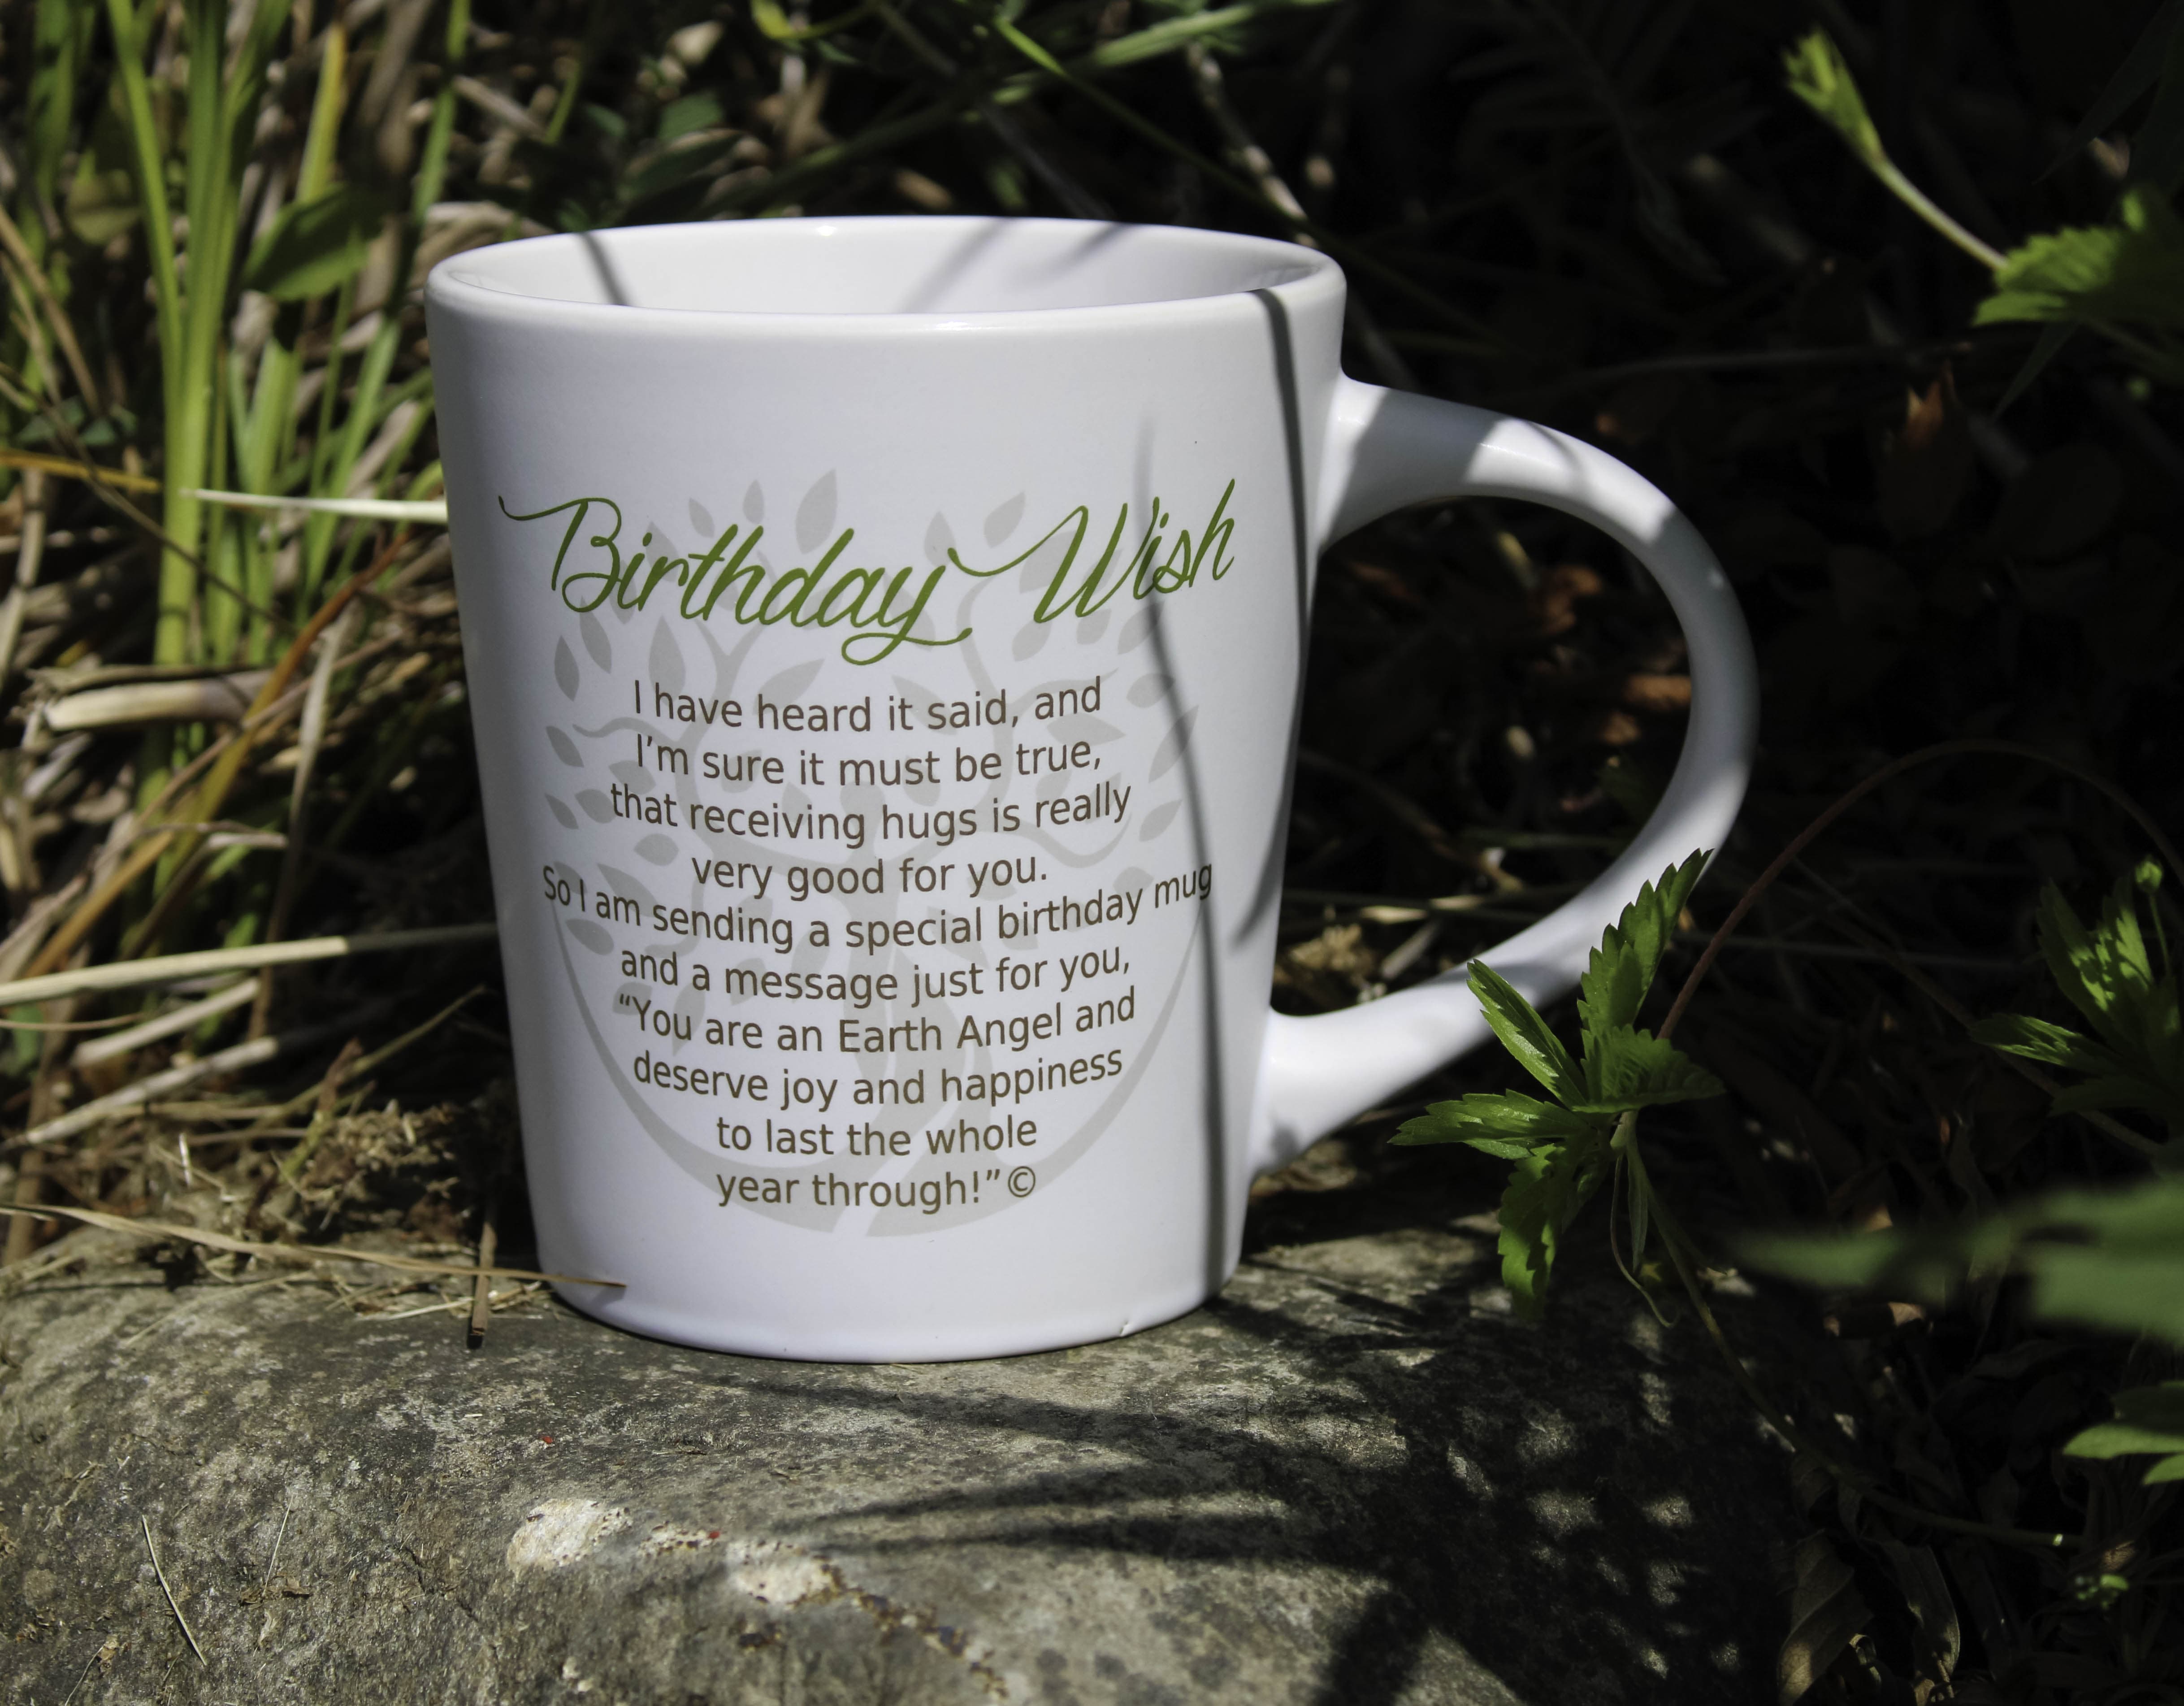 Birthday Wish: Mug